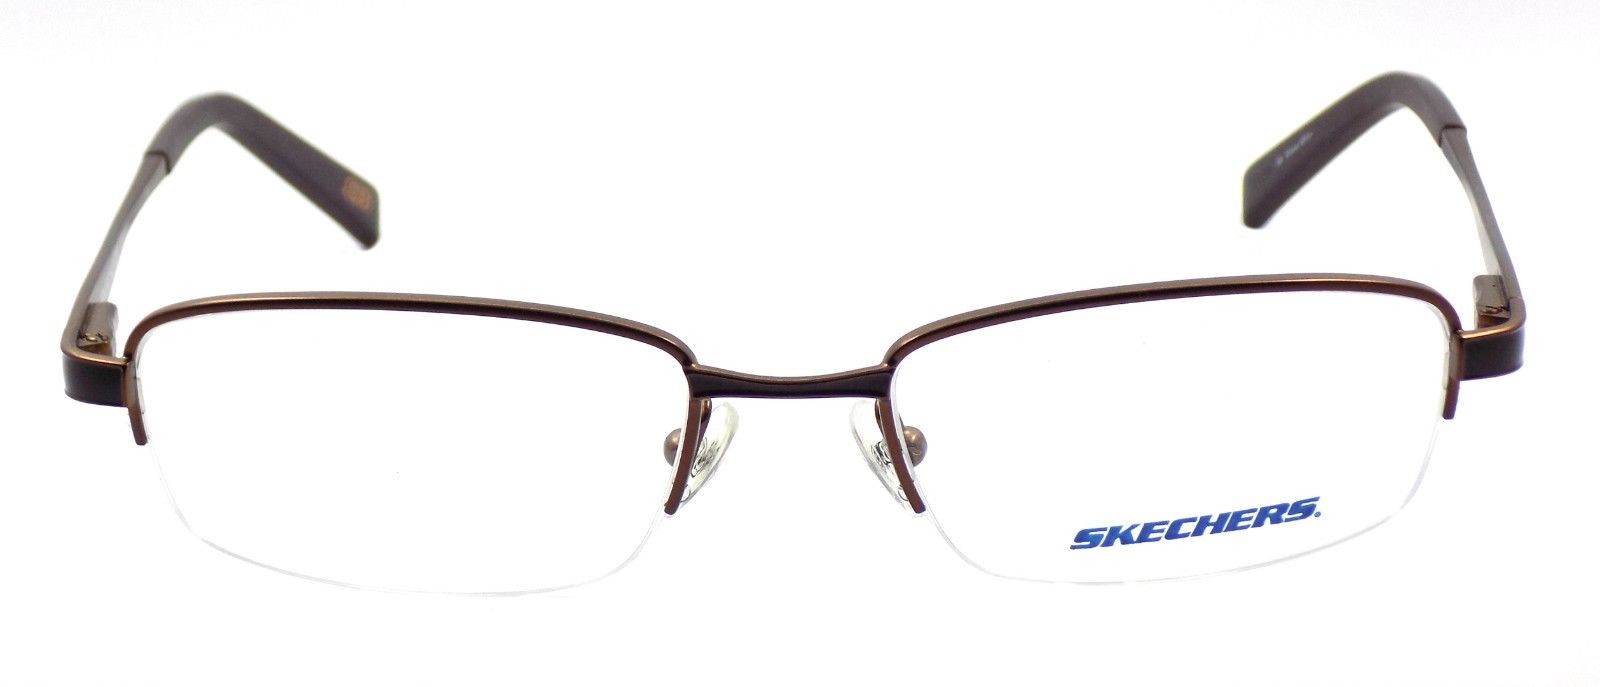 2-SKECHERS SK 3100 OR Men's Eyeglasses Frames 51-18-135 Matte Orange / Brown +CASE-715583661516-IKSpecs